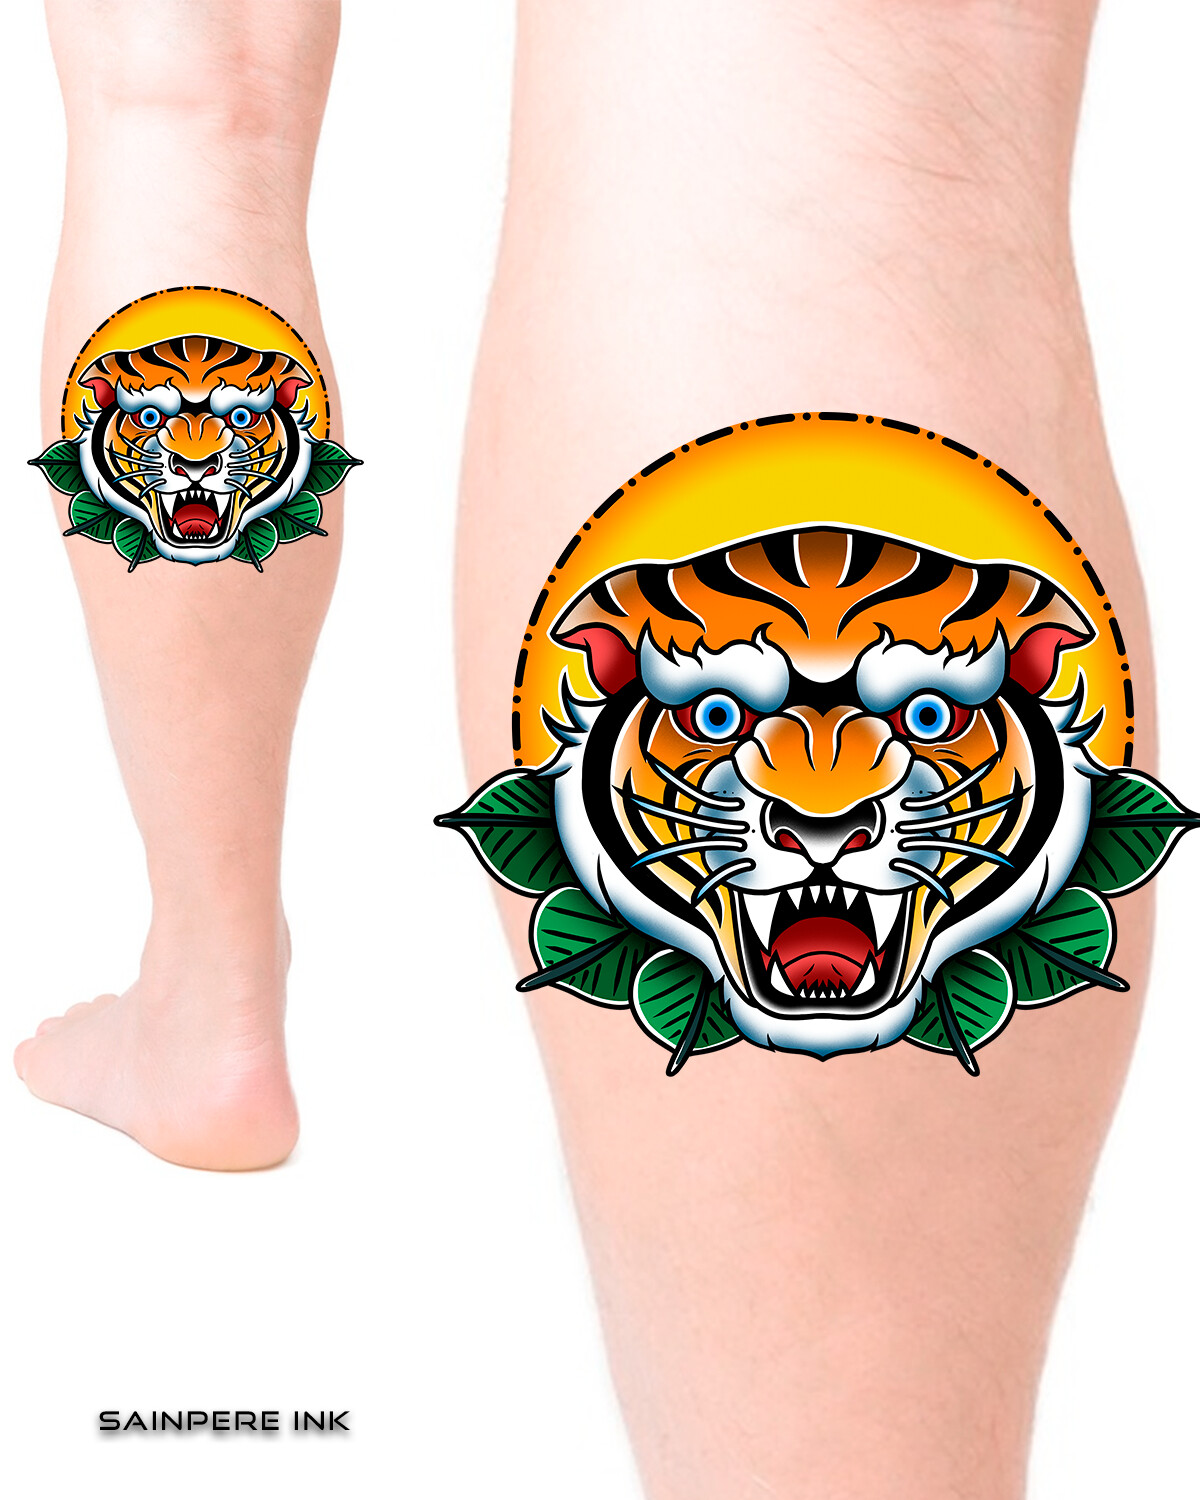 American traditional tiger by Troy Brett @ Rick's Tattoos - Arlington, VA :  r/tattoos